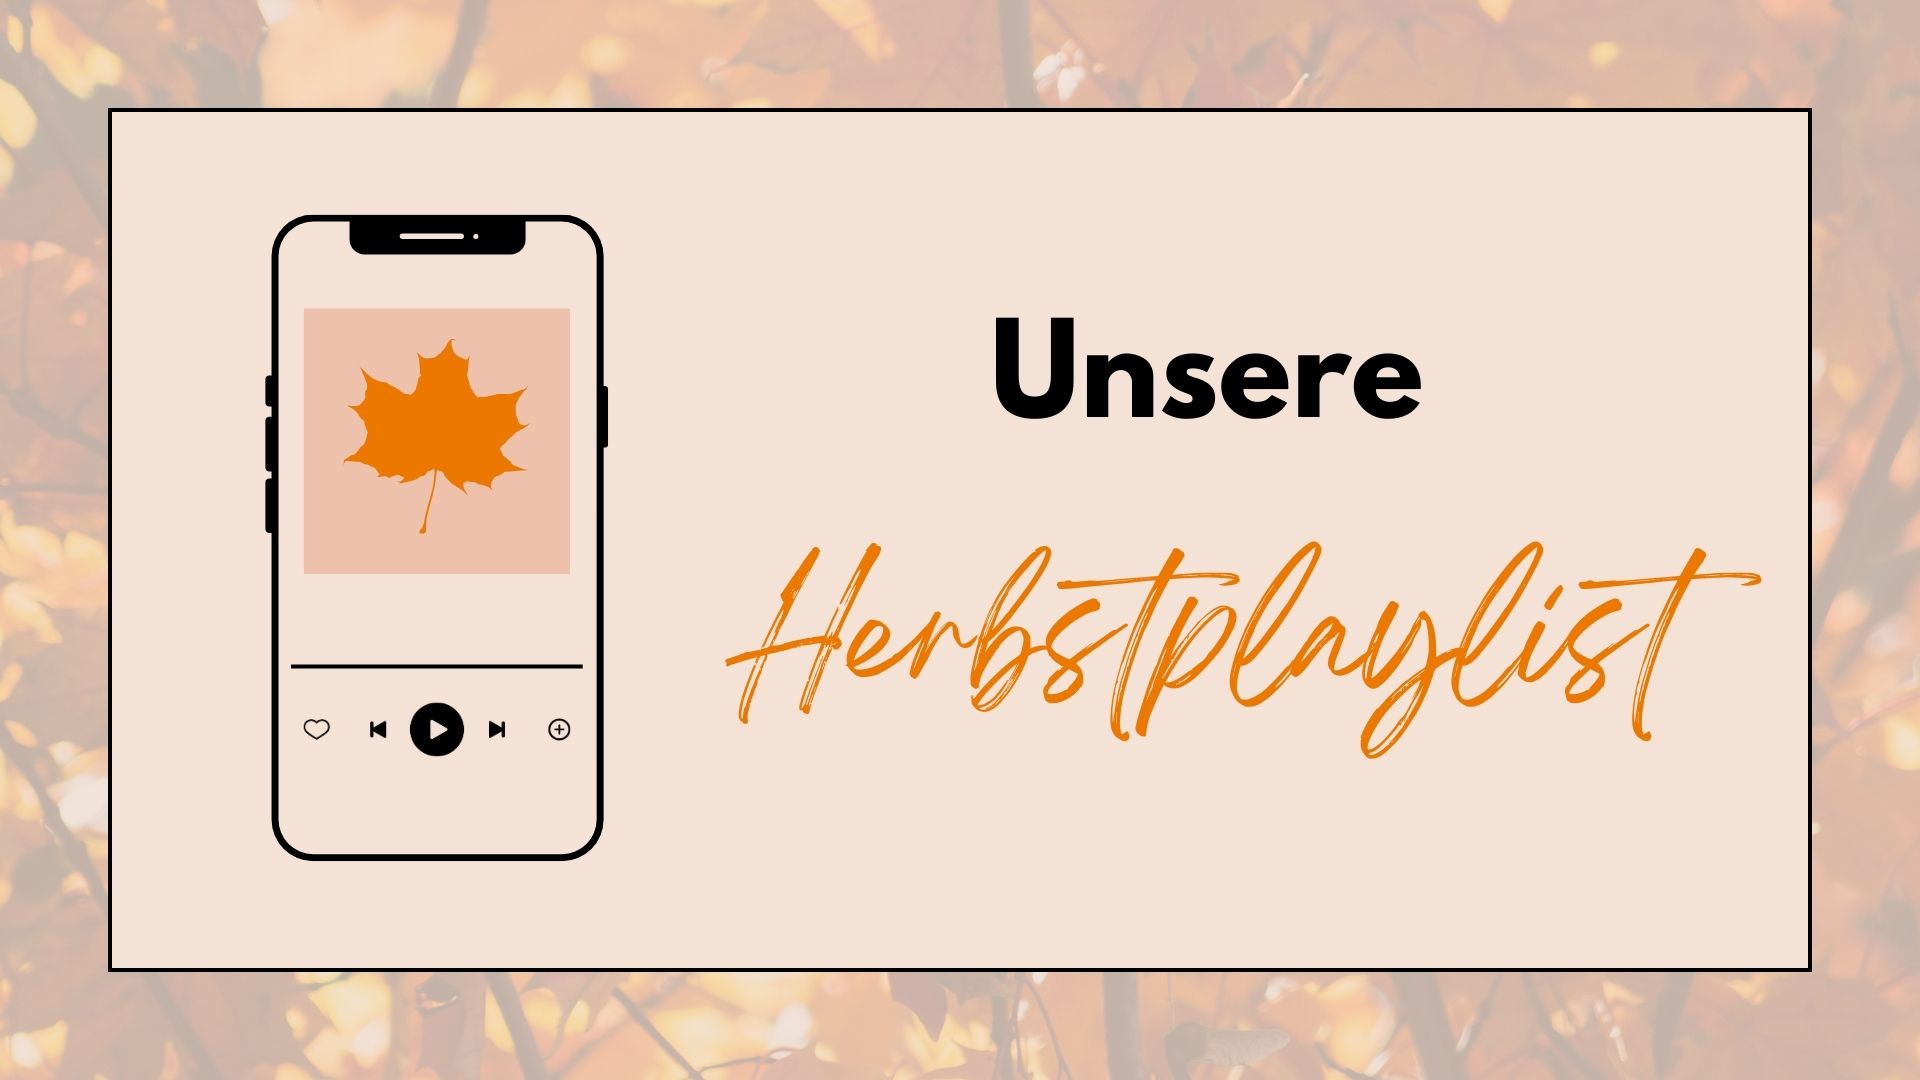 Abbildung eines Handys, das Musik abspielt mit der Überschrift "Unsere Herbstplaylist"